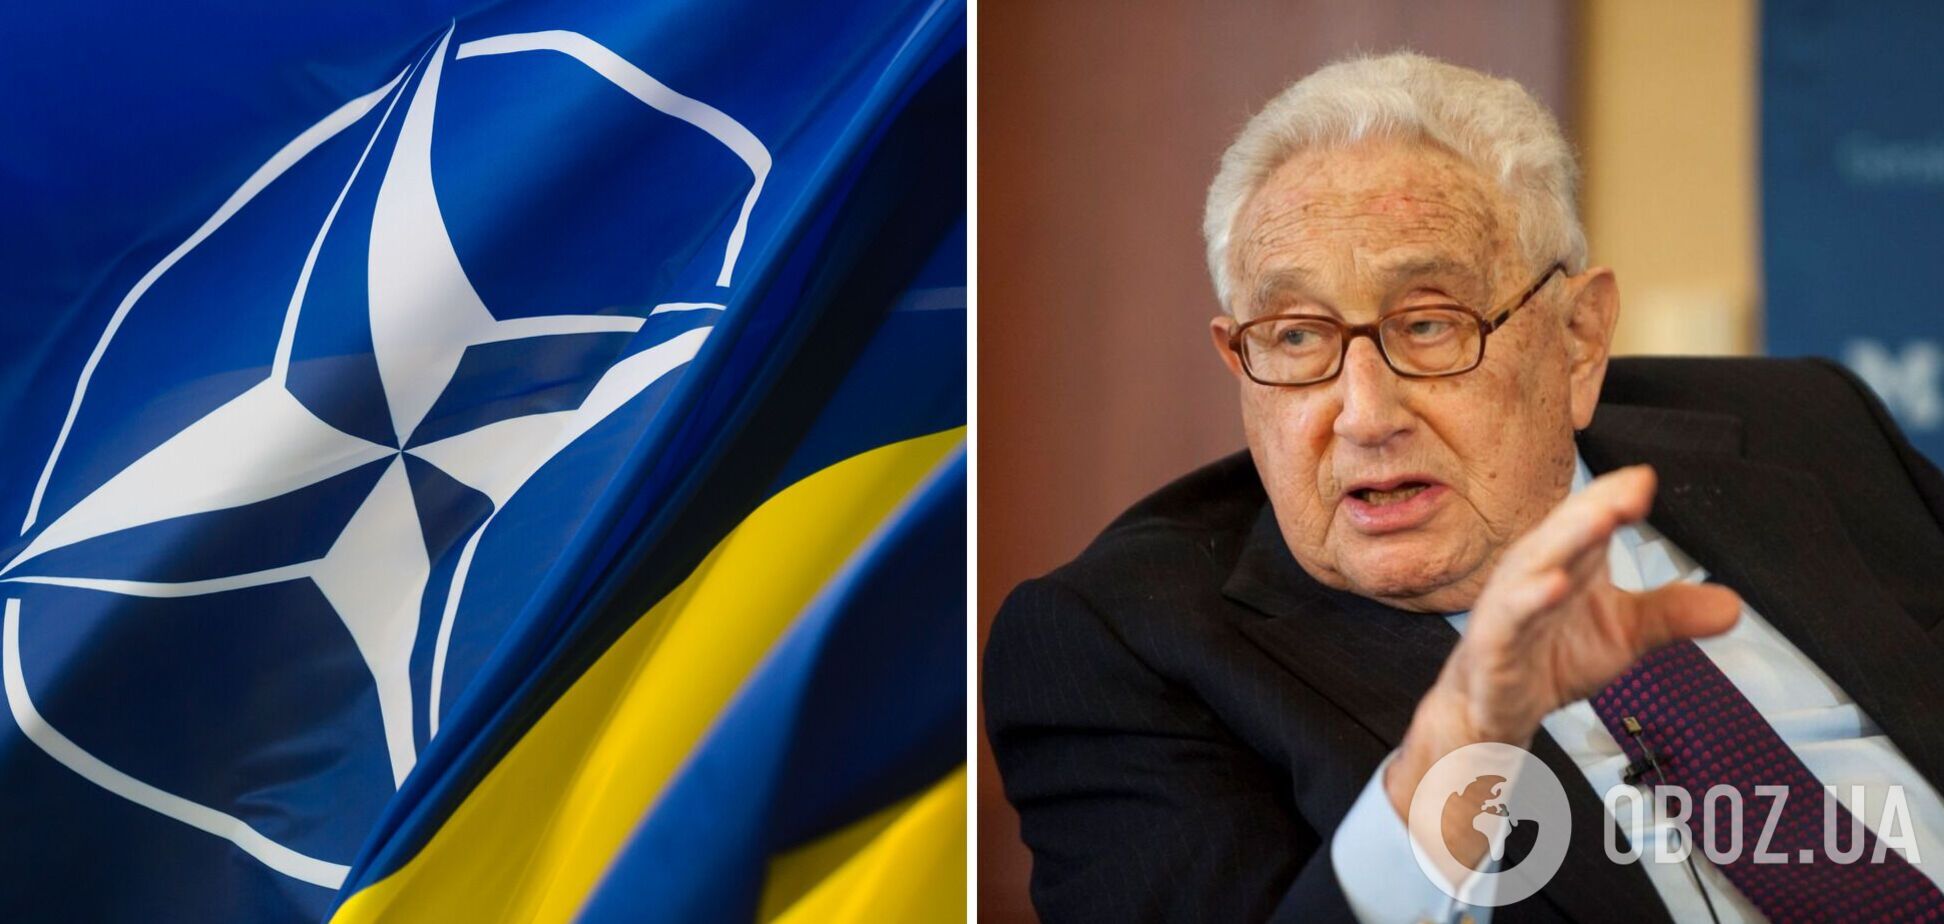 Тезис Киссинджера о НАТО и Украине: интересное мнение, которое о многом говорит